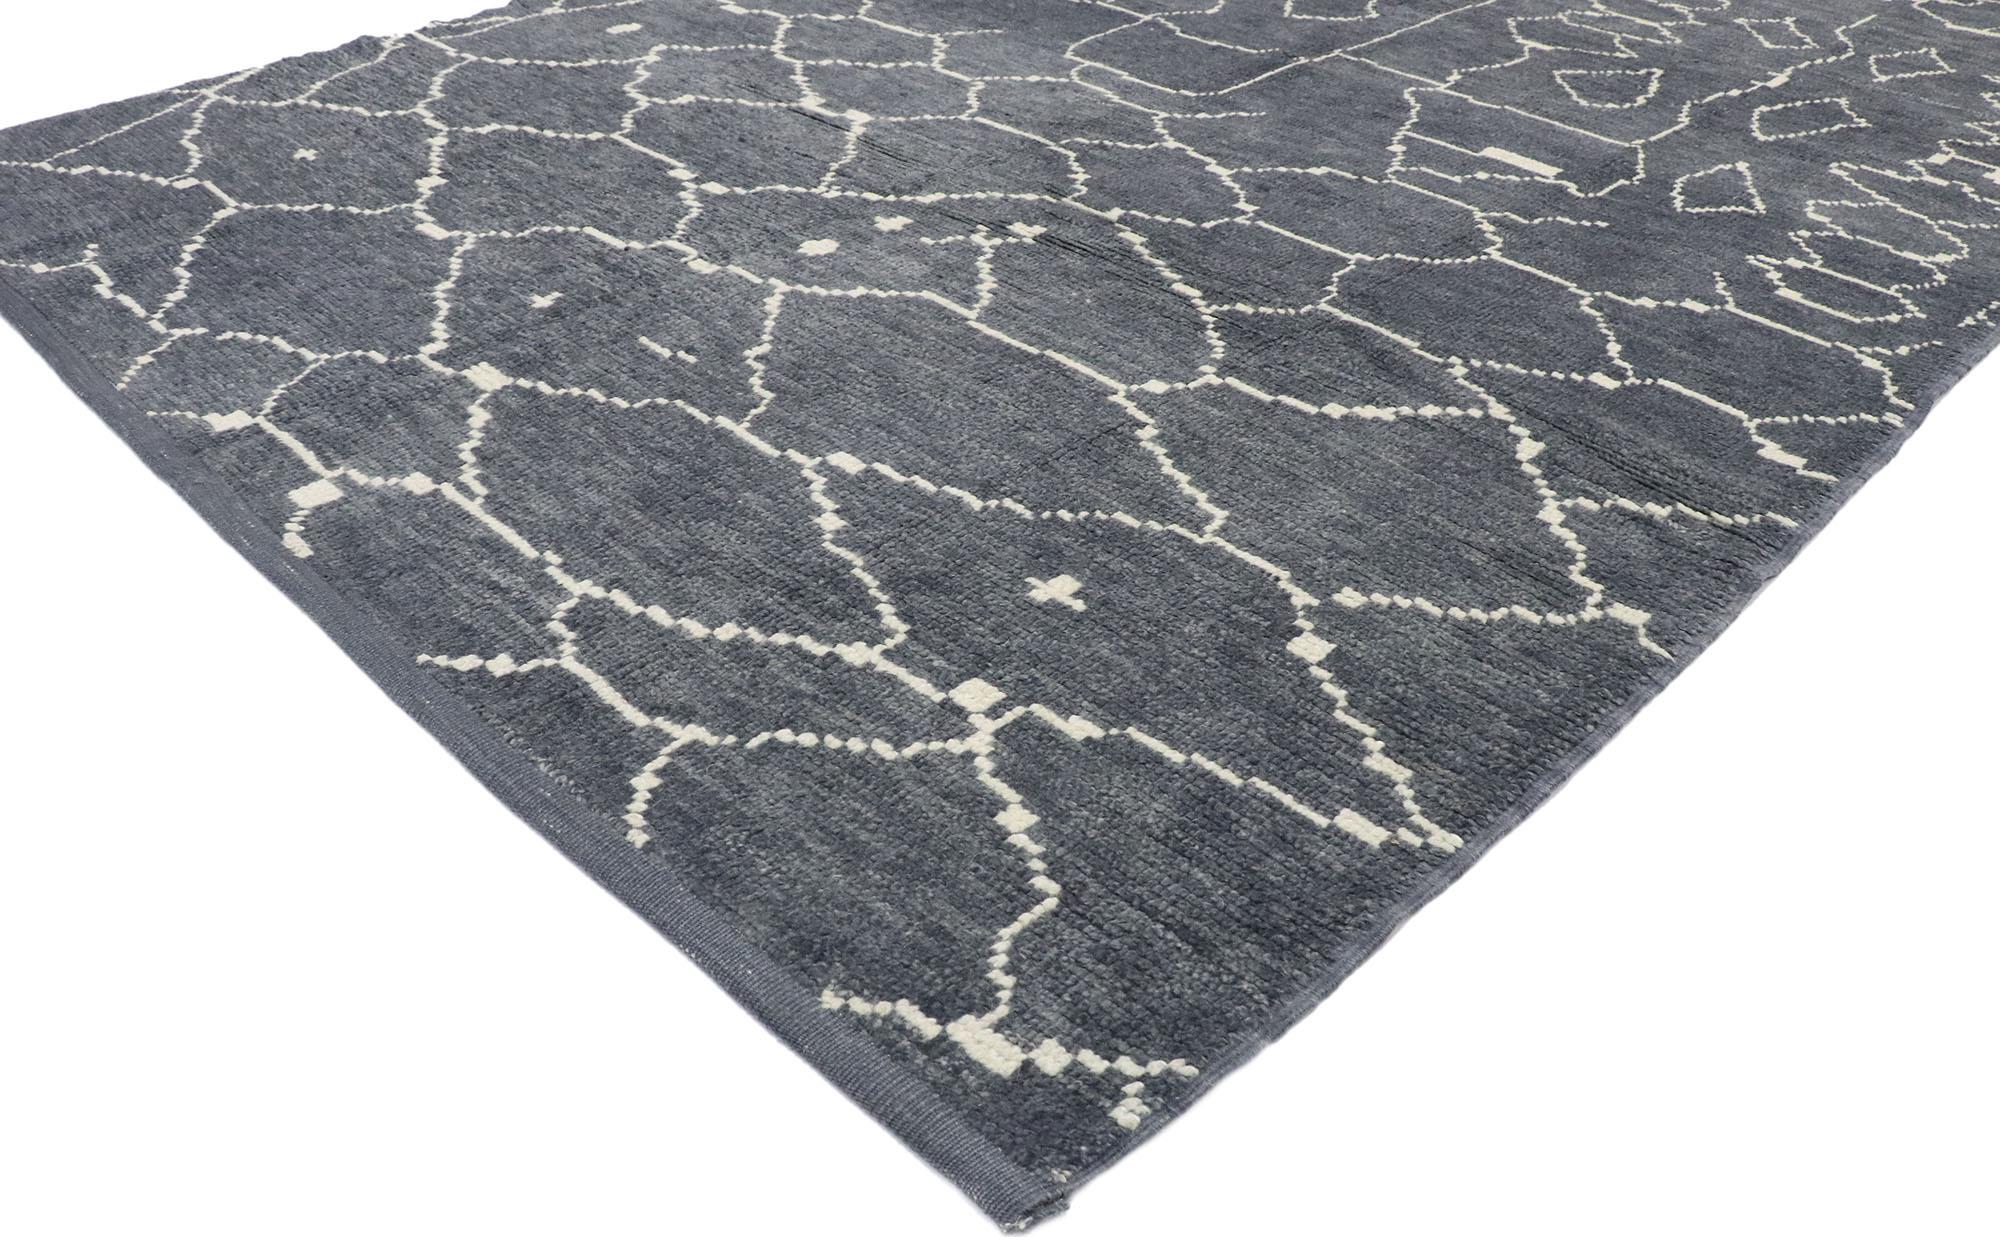 53443, neuer moderner Teppich im marokkanischen Stil mit Tribal-Muster. Dieser moderne marokkanische Teppich aus handgeknüpfter Wolle mit seinem modernen Tribal-Stil, seinen unglaublichen Details und seiner Textur ist eine fesselnde Vision gewebter